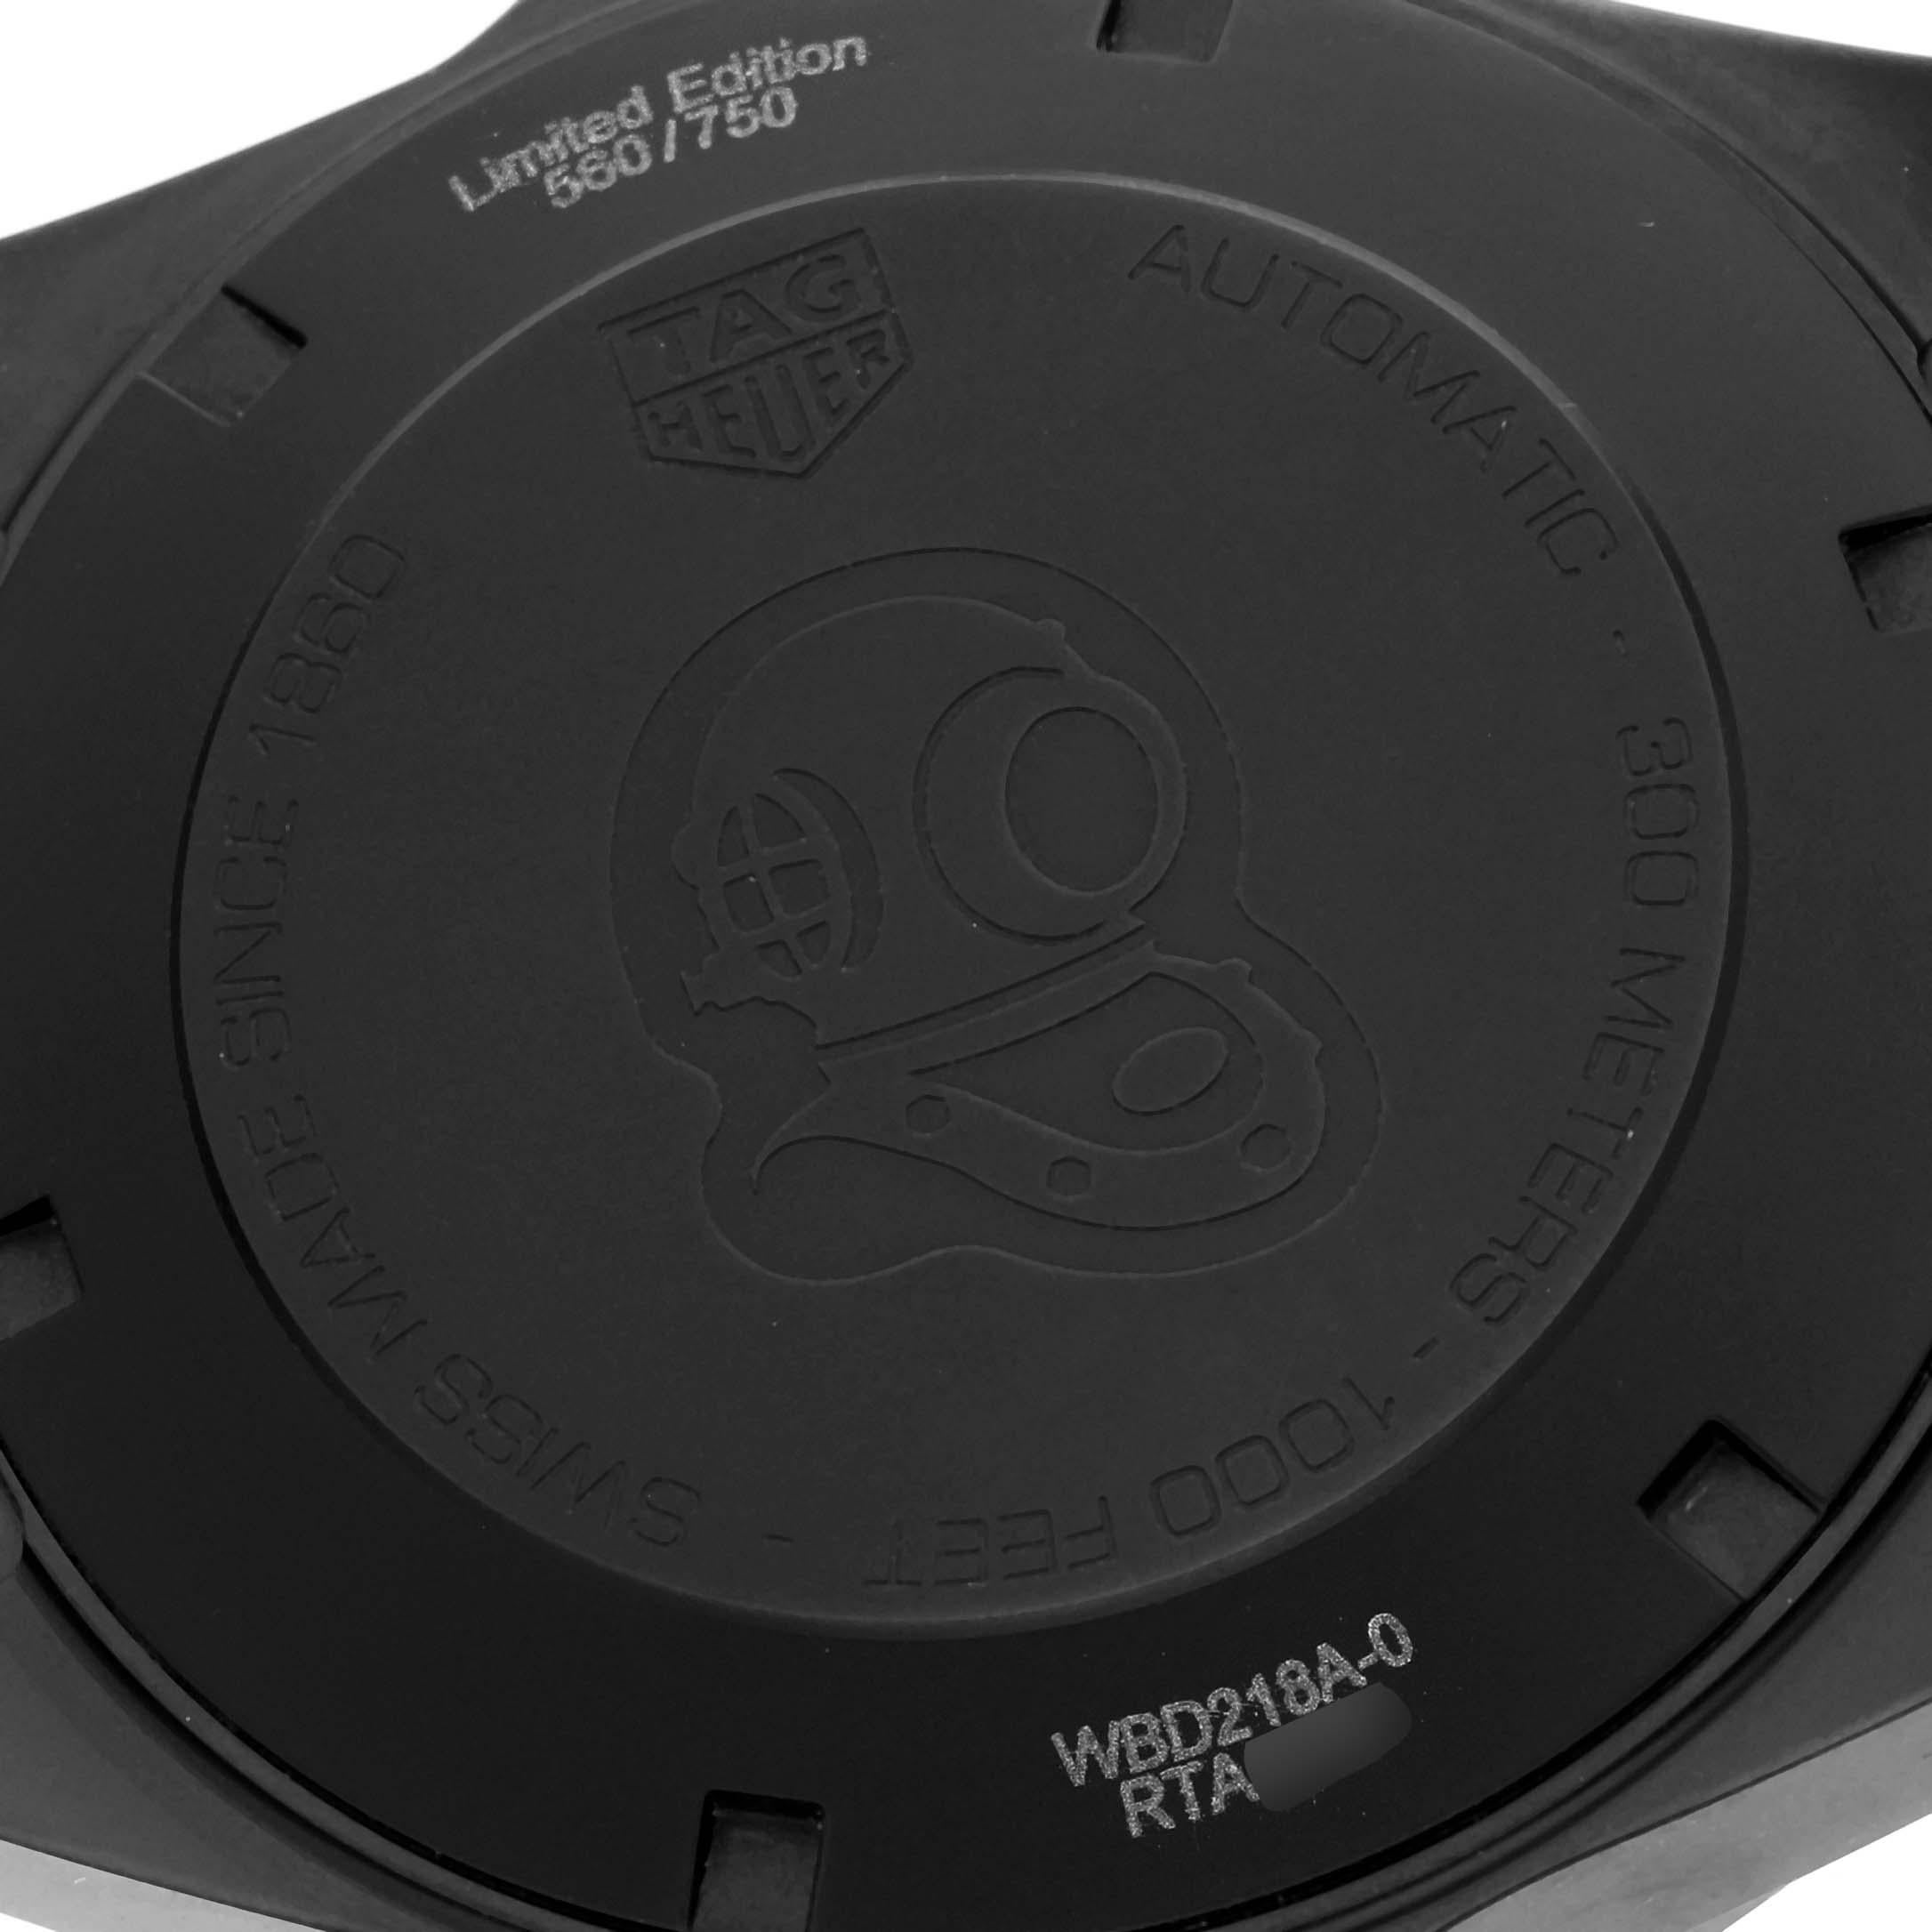 Tag Heuer Aquaracer Titanium Carbon Limited Edition Herrenuhr WBD218A. Automatisches Uhrwerk mit Selbstaufzug. Gehäuse aus Titan-Karbon mit einem Durchmesser von 41,0 mm. Einseitig drehbare schwarze Karbonlünette. Kratzfestes Saphirglas. Schwarzes